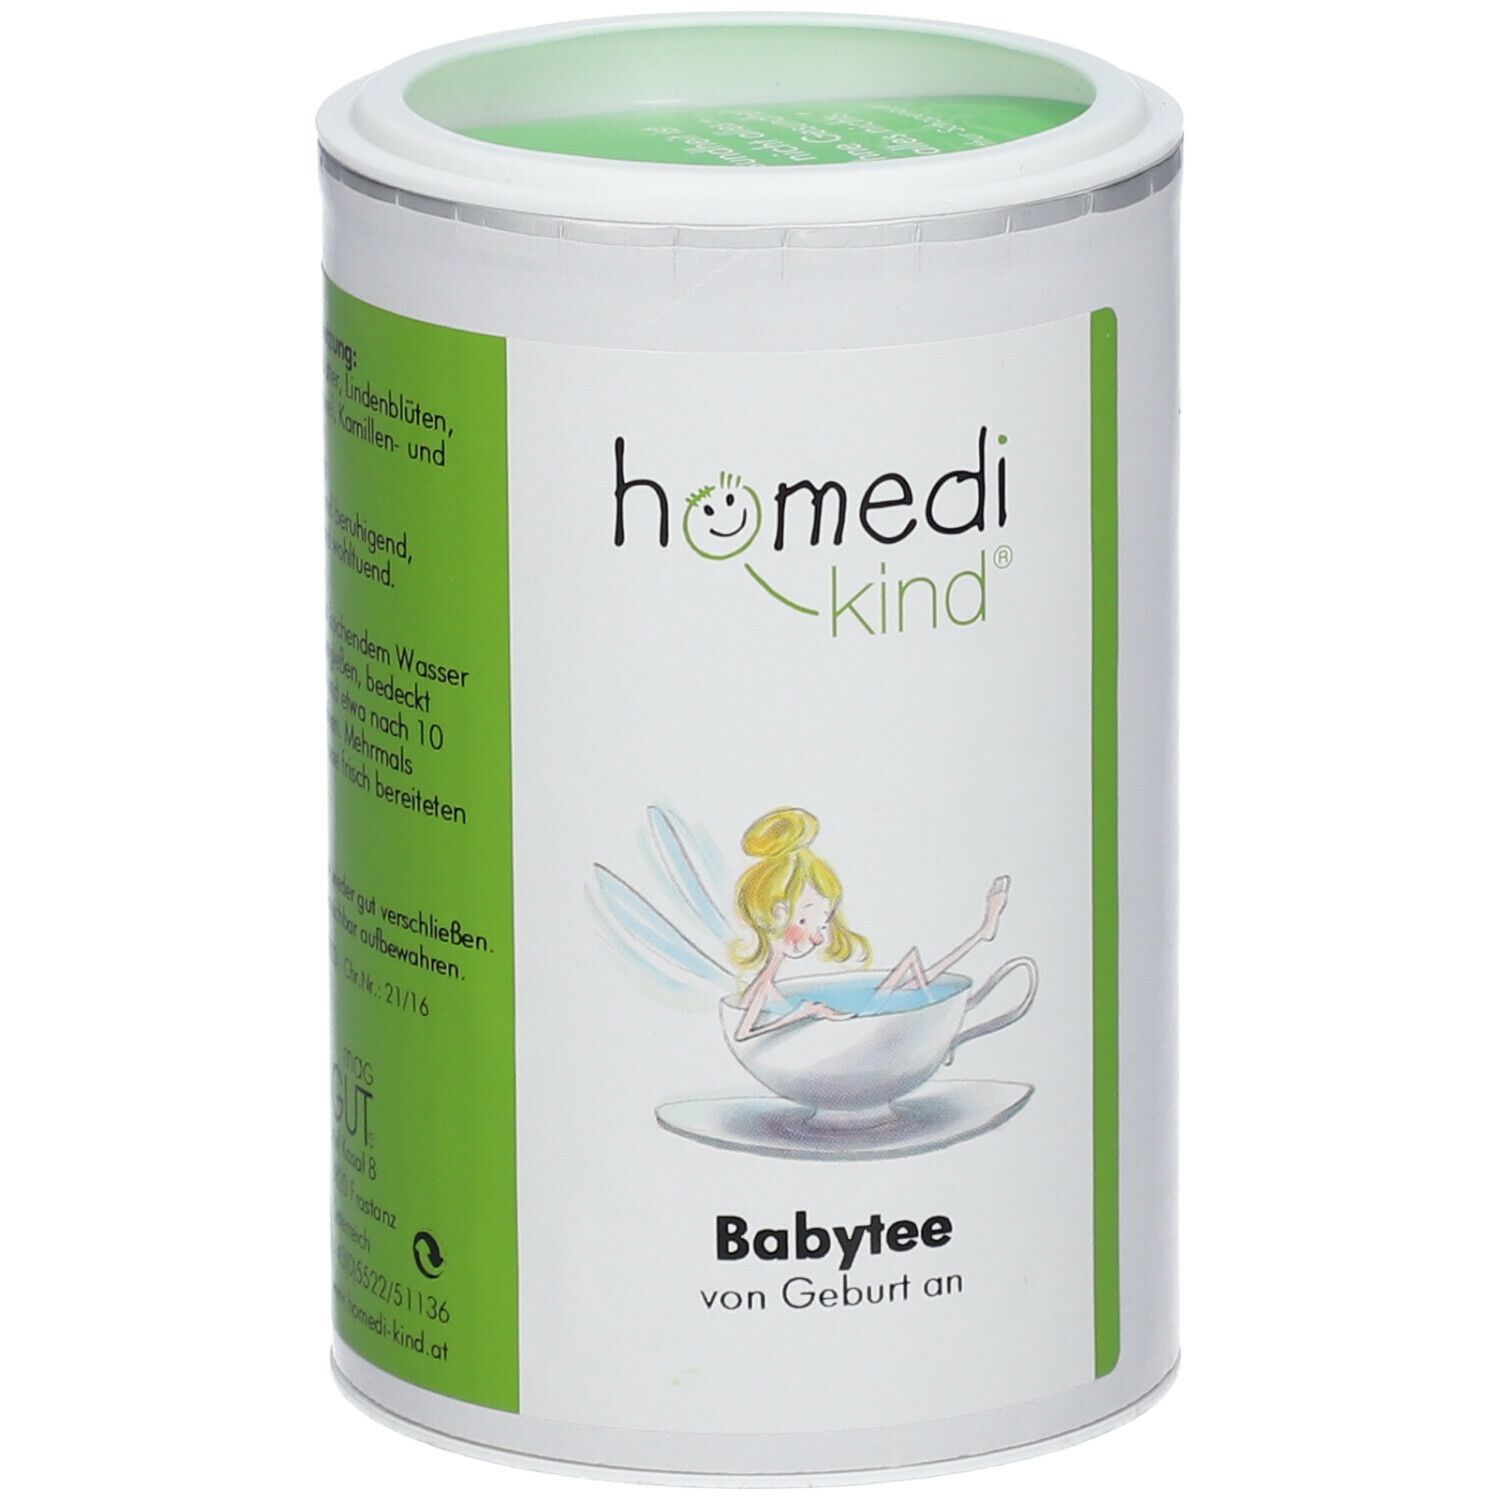 homedi-kind® Baby Tee